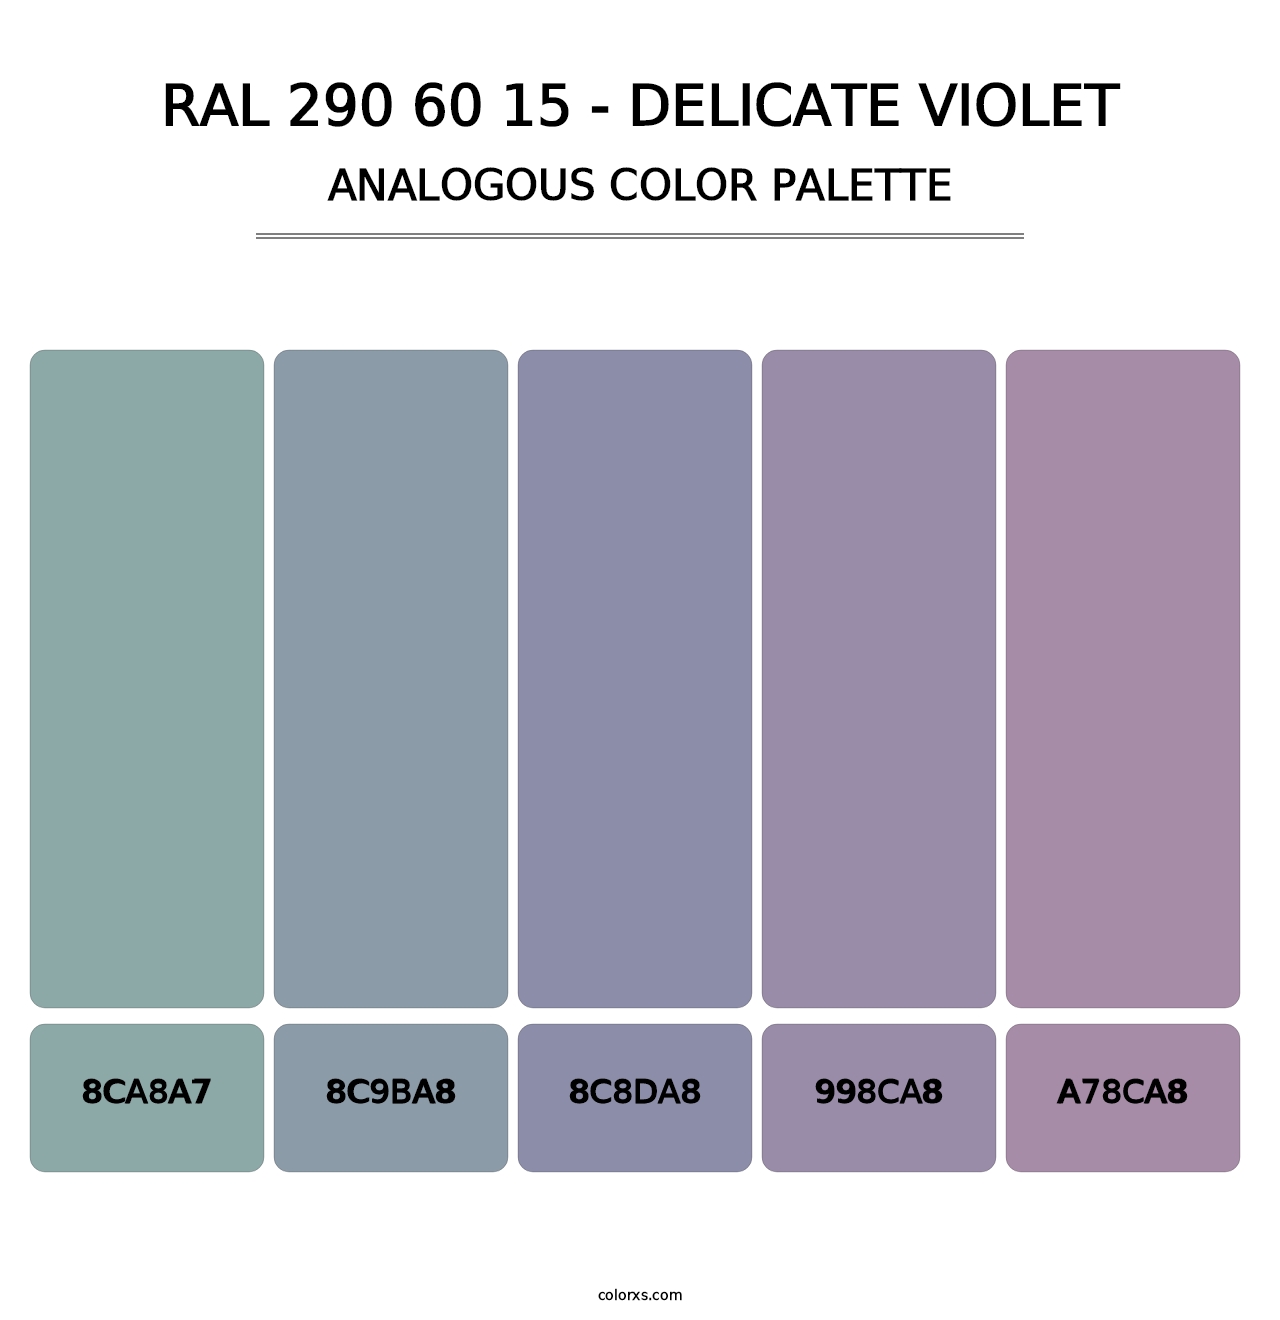 RAL 290 60 15 - Delicate Violet - Analogous Color Palette